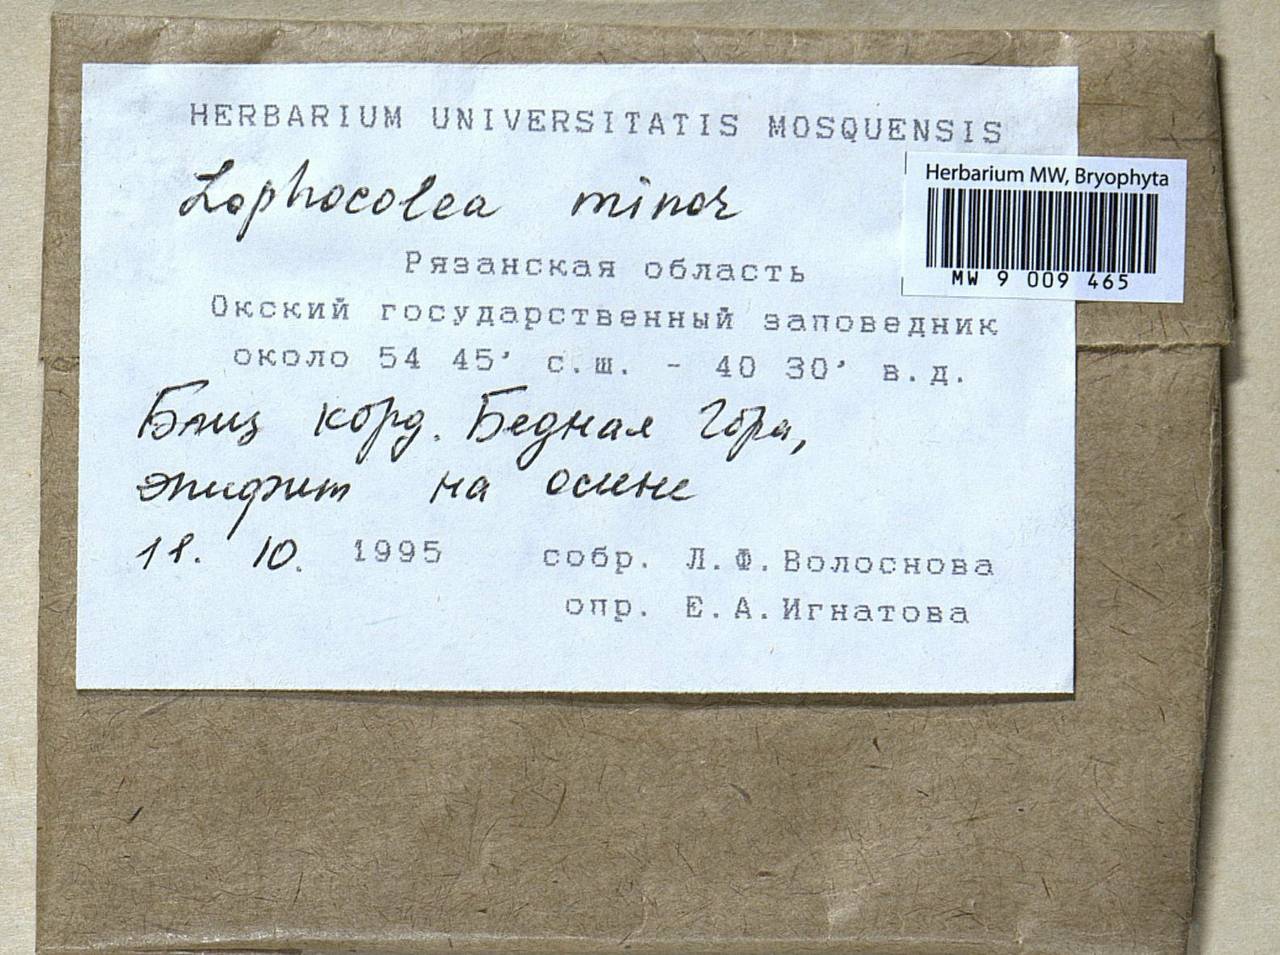 Lophocolea minor Nees, Гербарий мохообразных, Мхи - Центральное Нечерноземье (B6) (Россия)